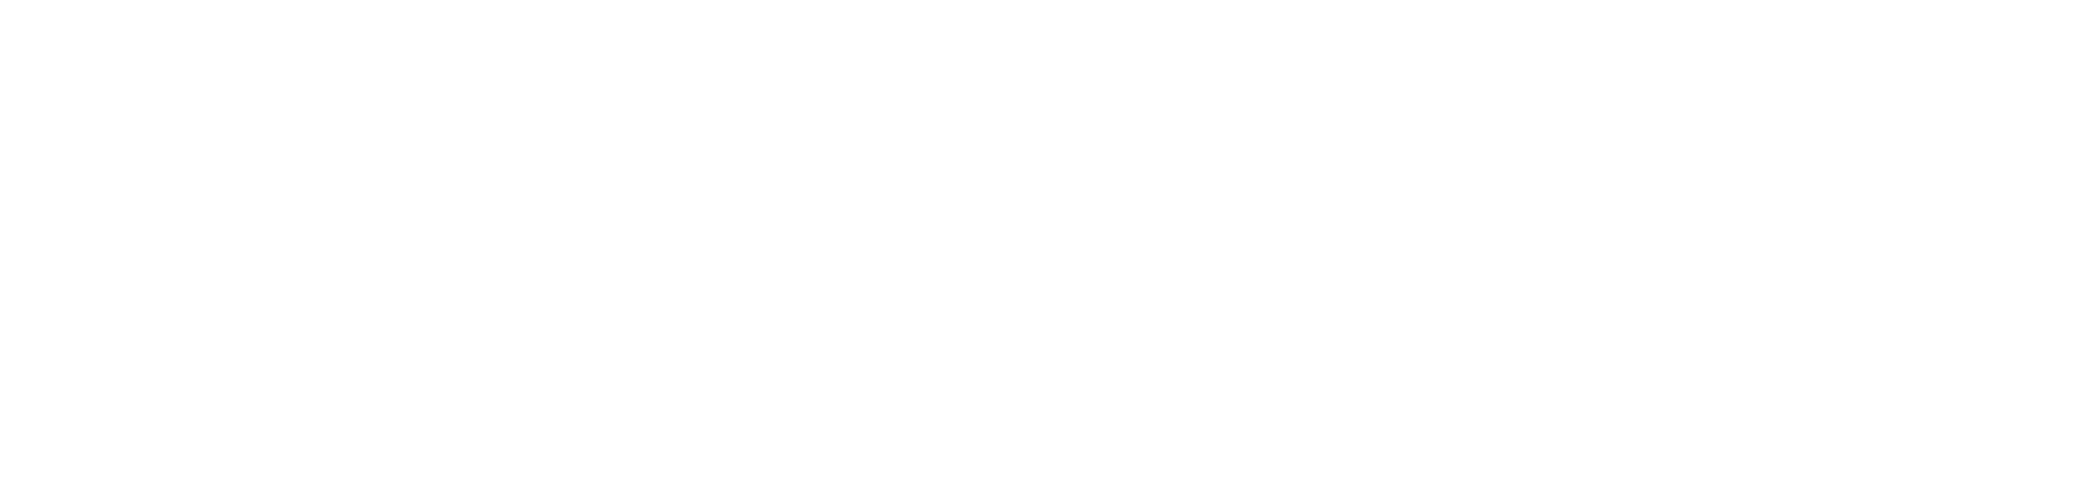 BVDW Zertifikate